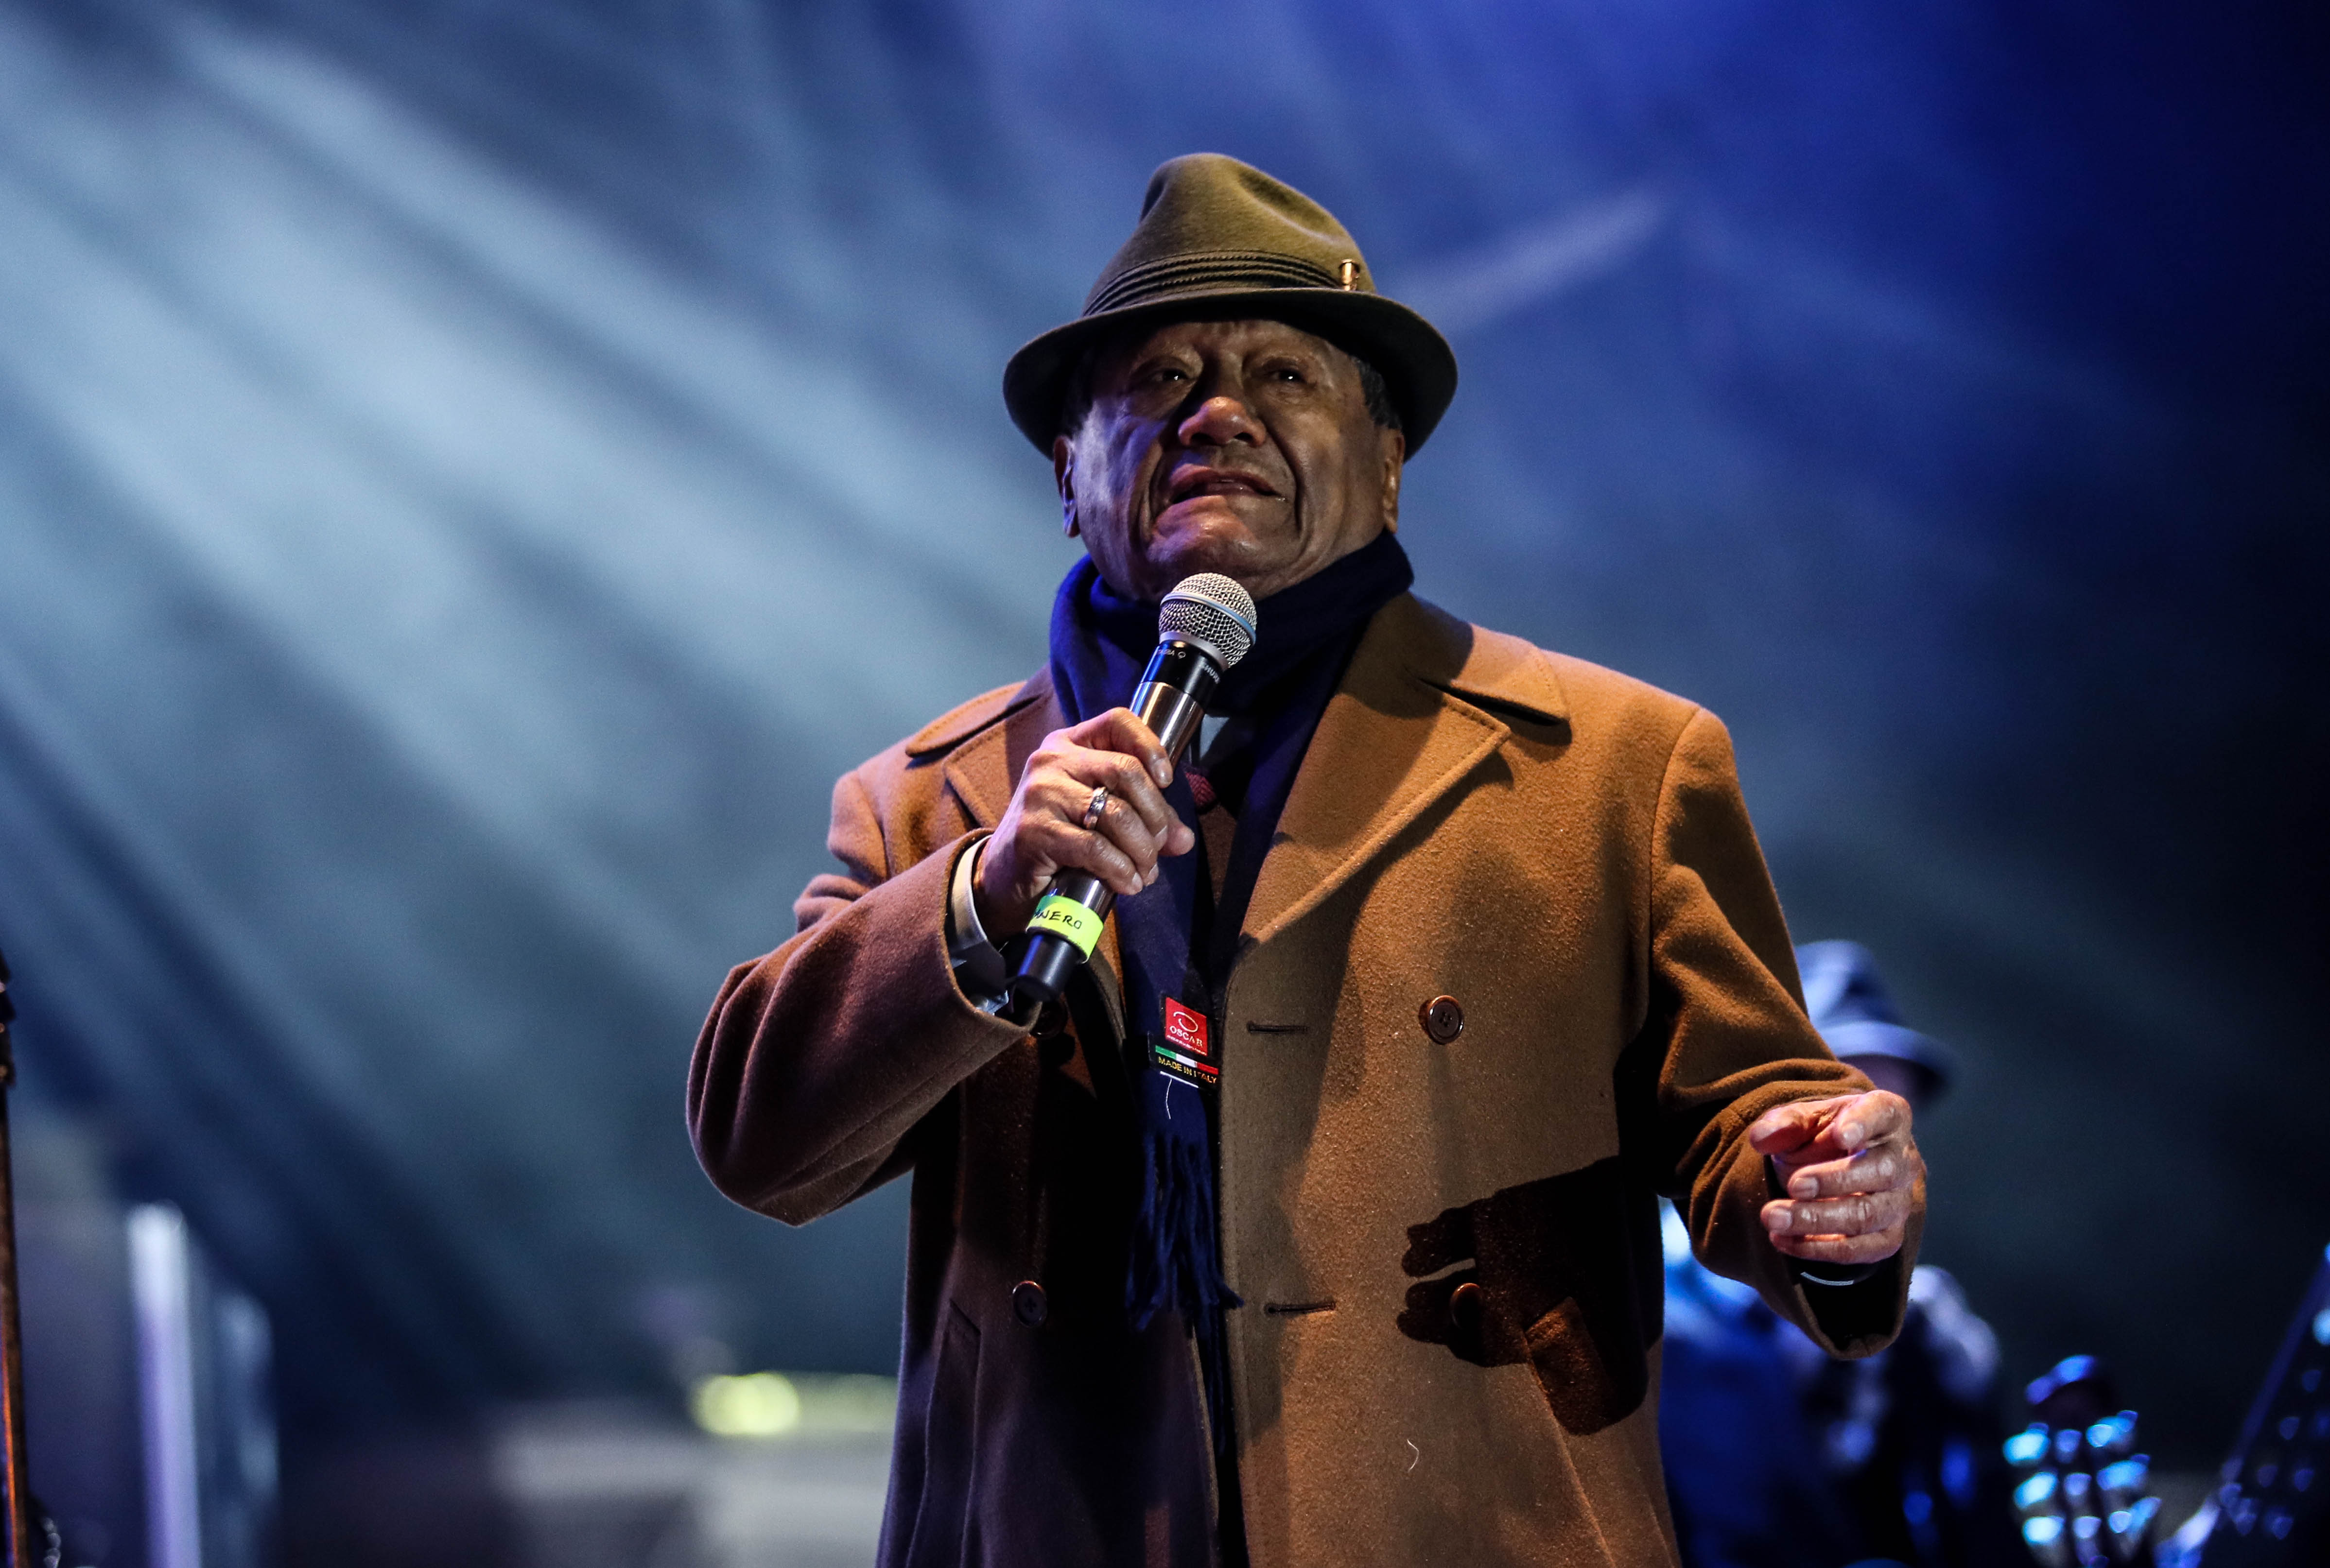 Armando Manzanero en concierto en enero de 2017 en Alamos, México. | Foto: Getty Images